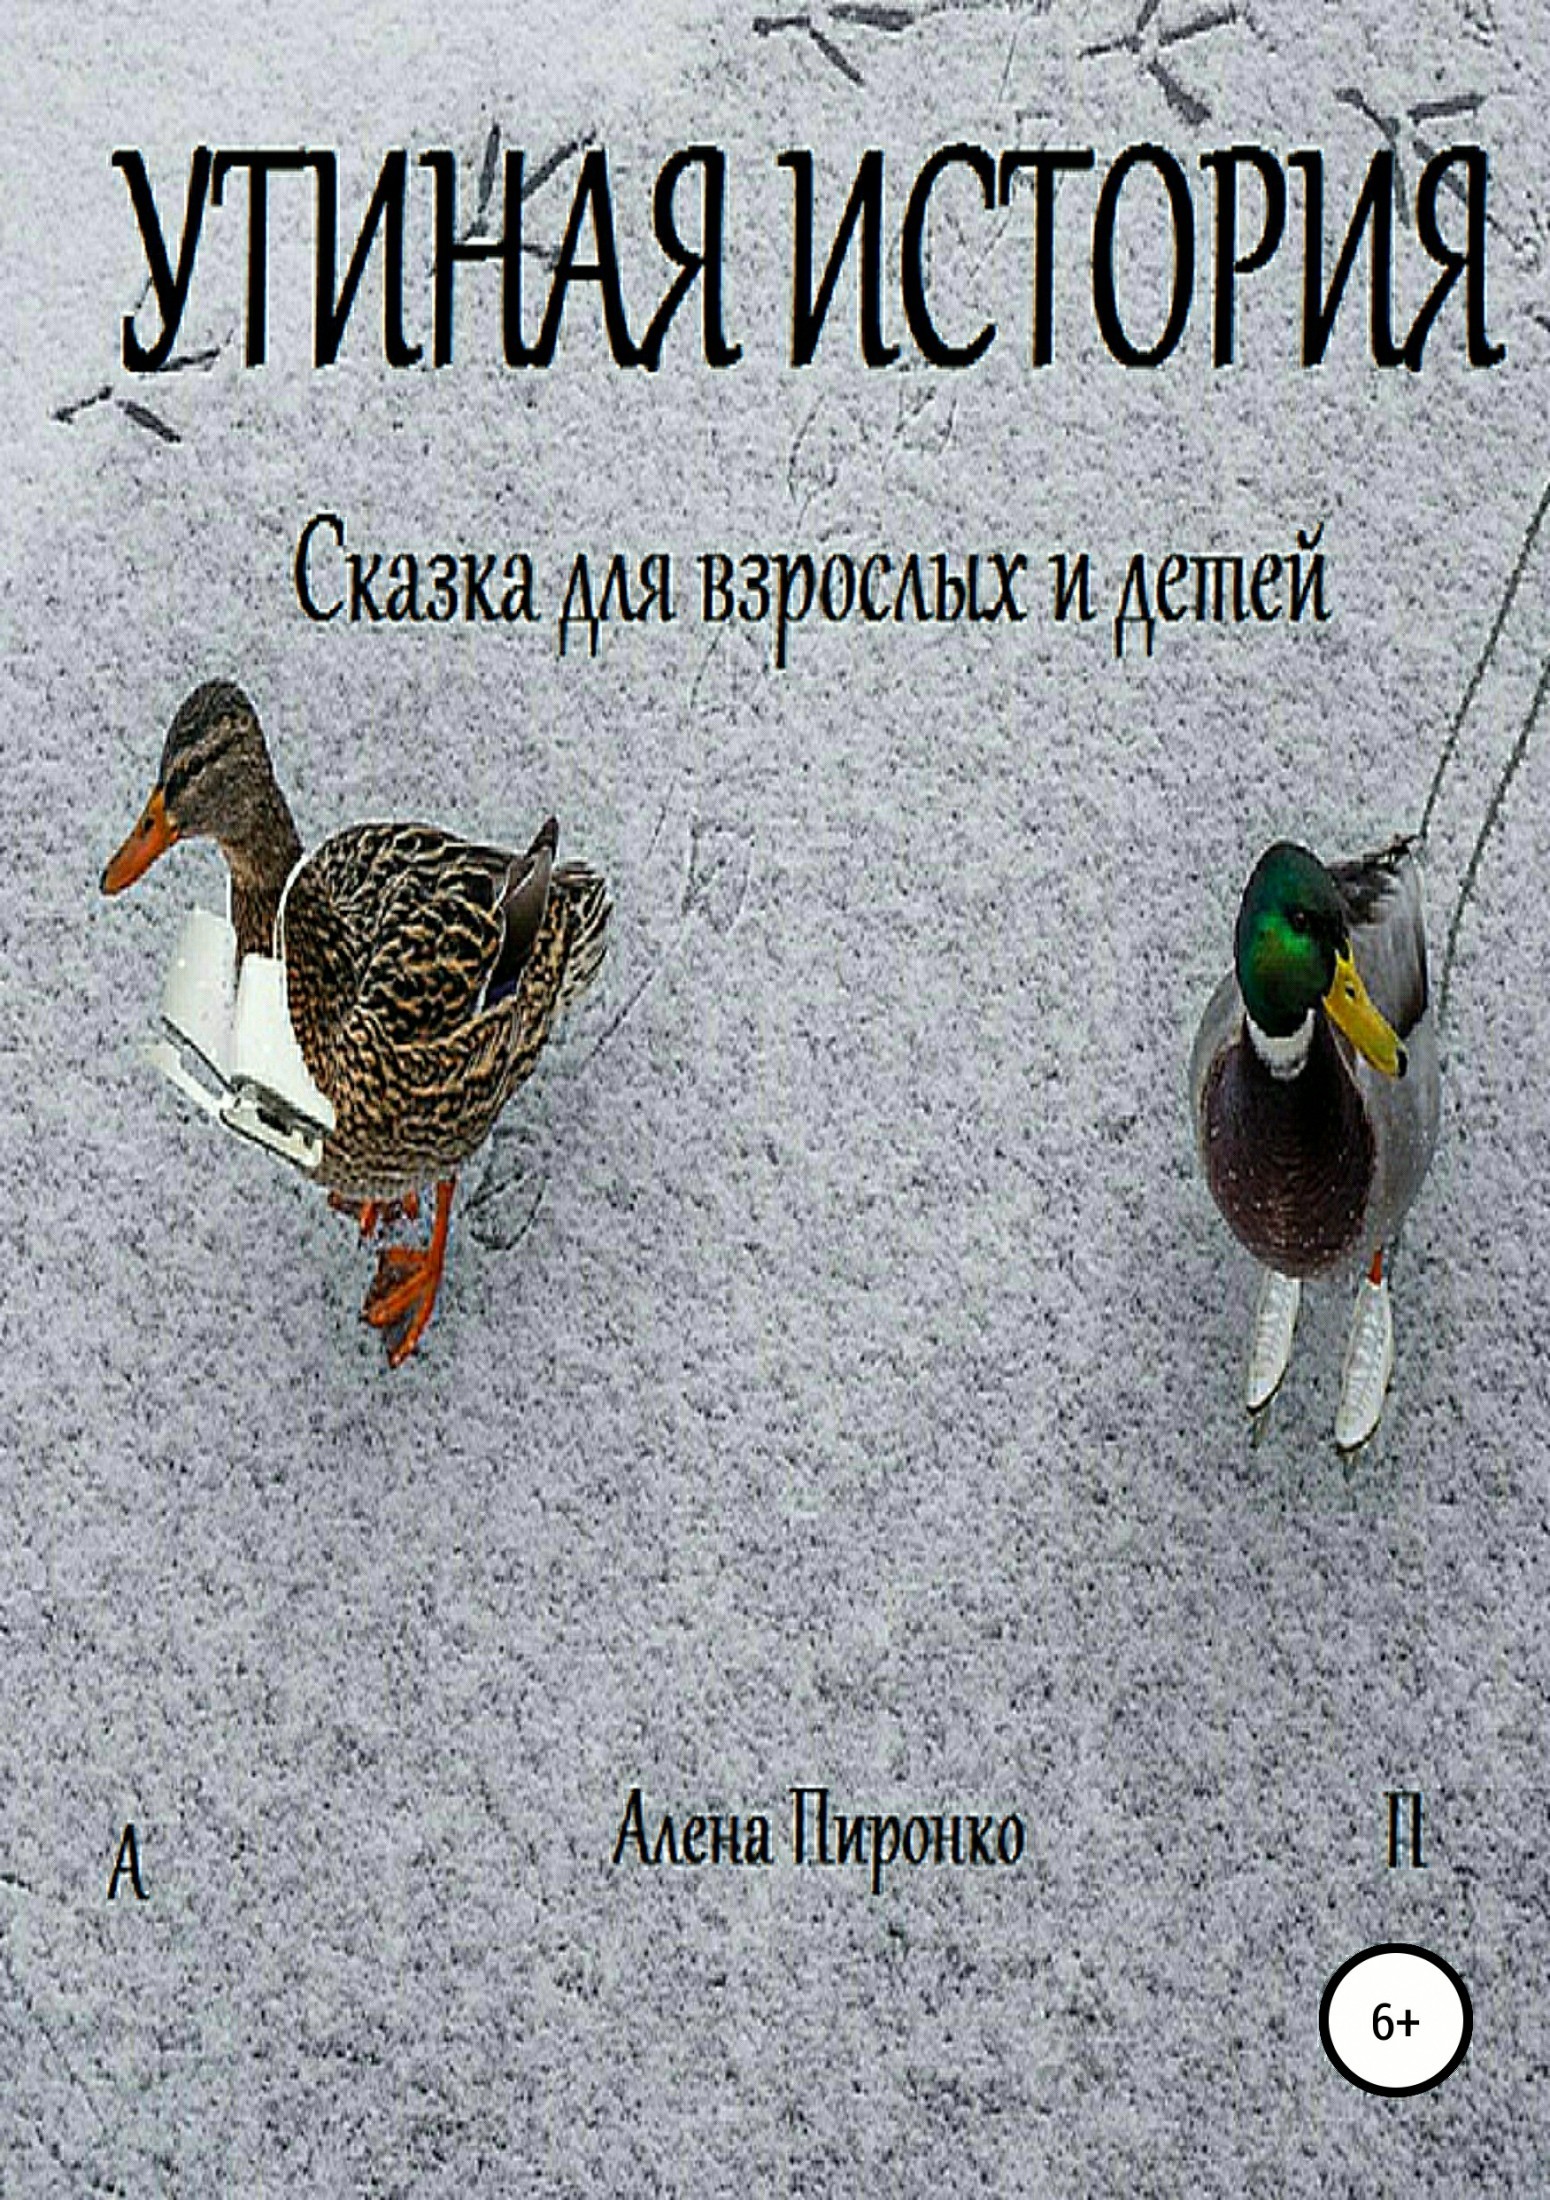 Книга Утиная история из серии , созданная Алена Пиронко, может относится к жанру Природа и животные, Сказки. Стоимость книги Утиная история  с идентификатором 34999842 составляет 0 руб.